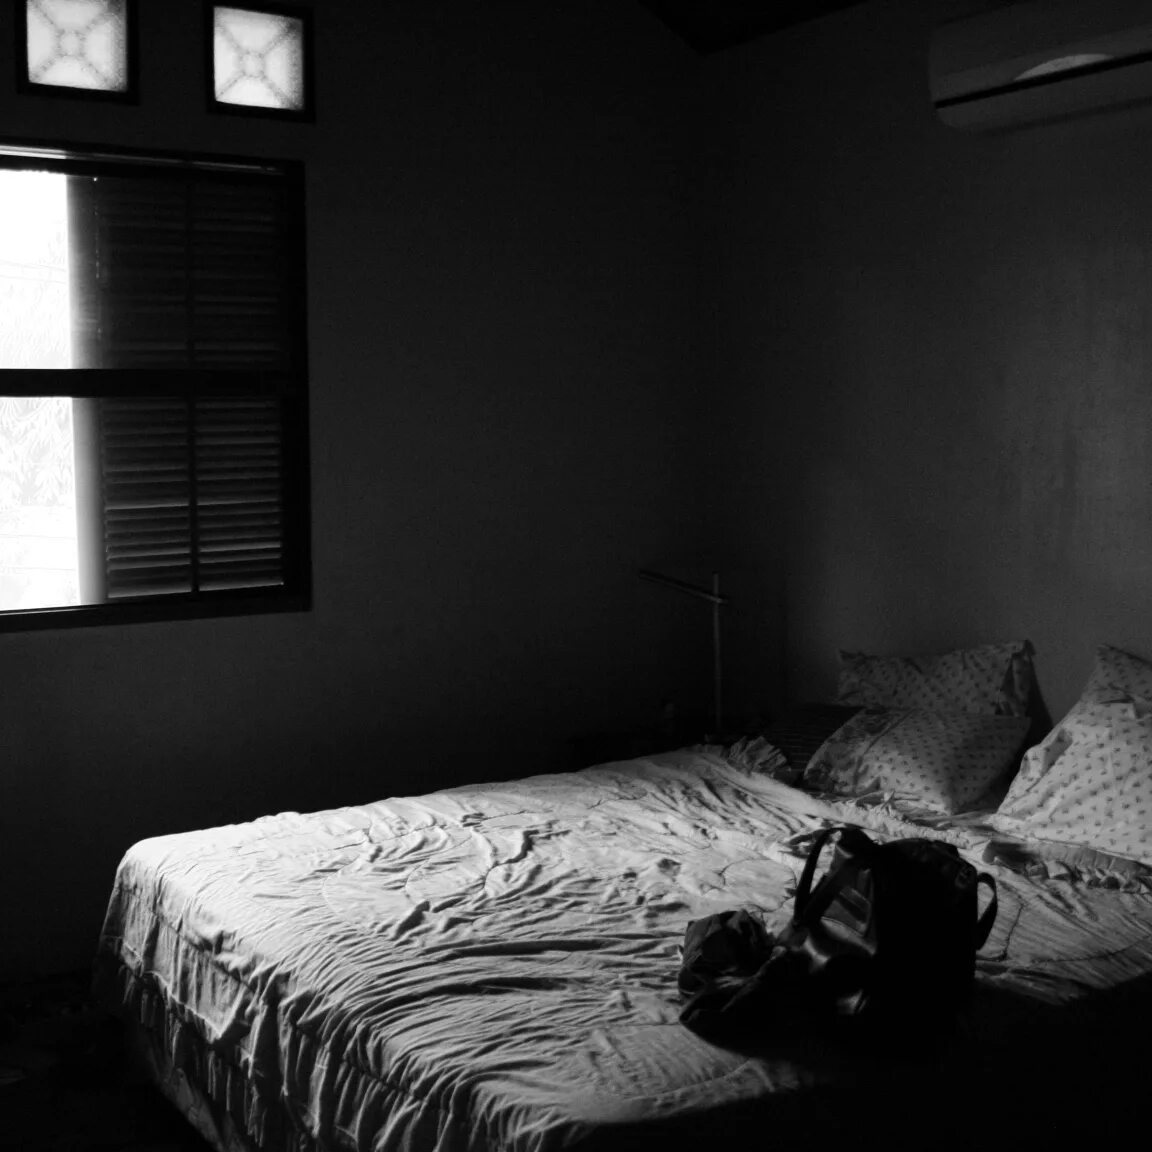 Комната с кроватью в темноте. Полумрак в комнате. Пустая комната с кроватью. Комната ночью. Постель в темноте